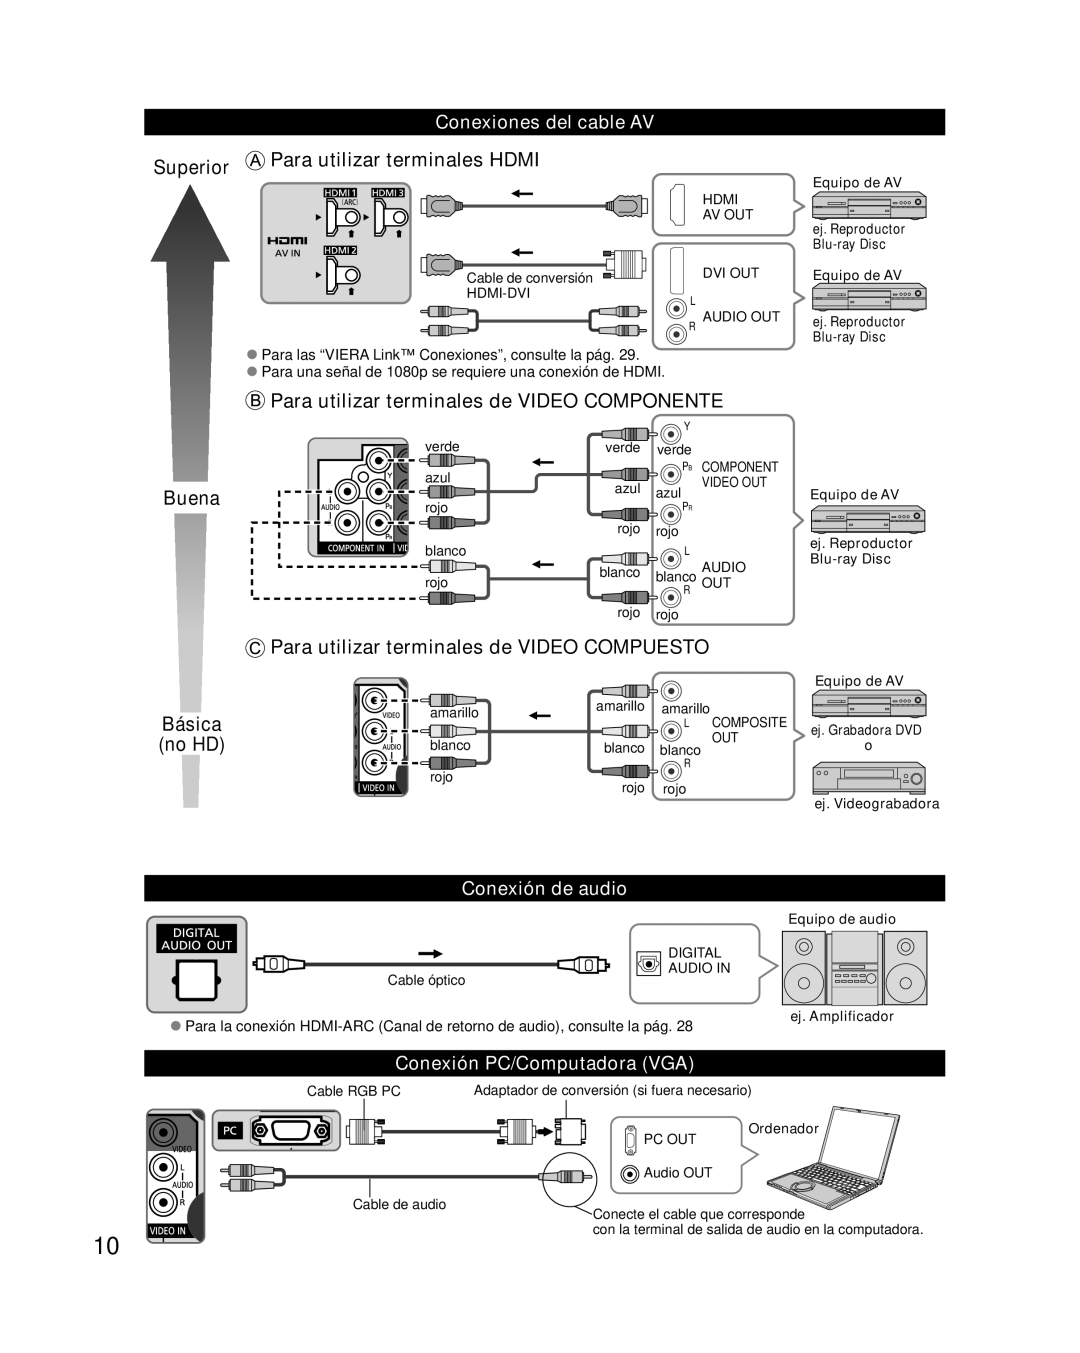 Panasonic TC-L32E3 Superior Para utilizar terminales HDMI, Para utilizar terminales de VIDEO COMPONENTE, Buena, Básica 